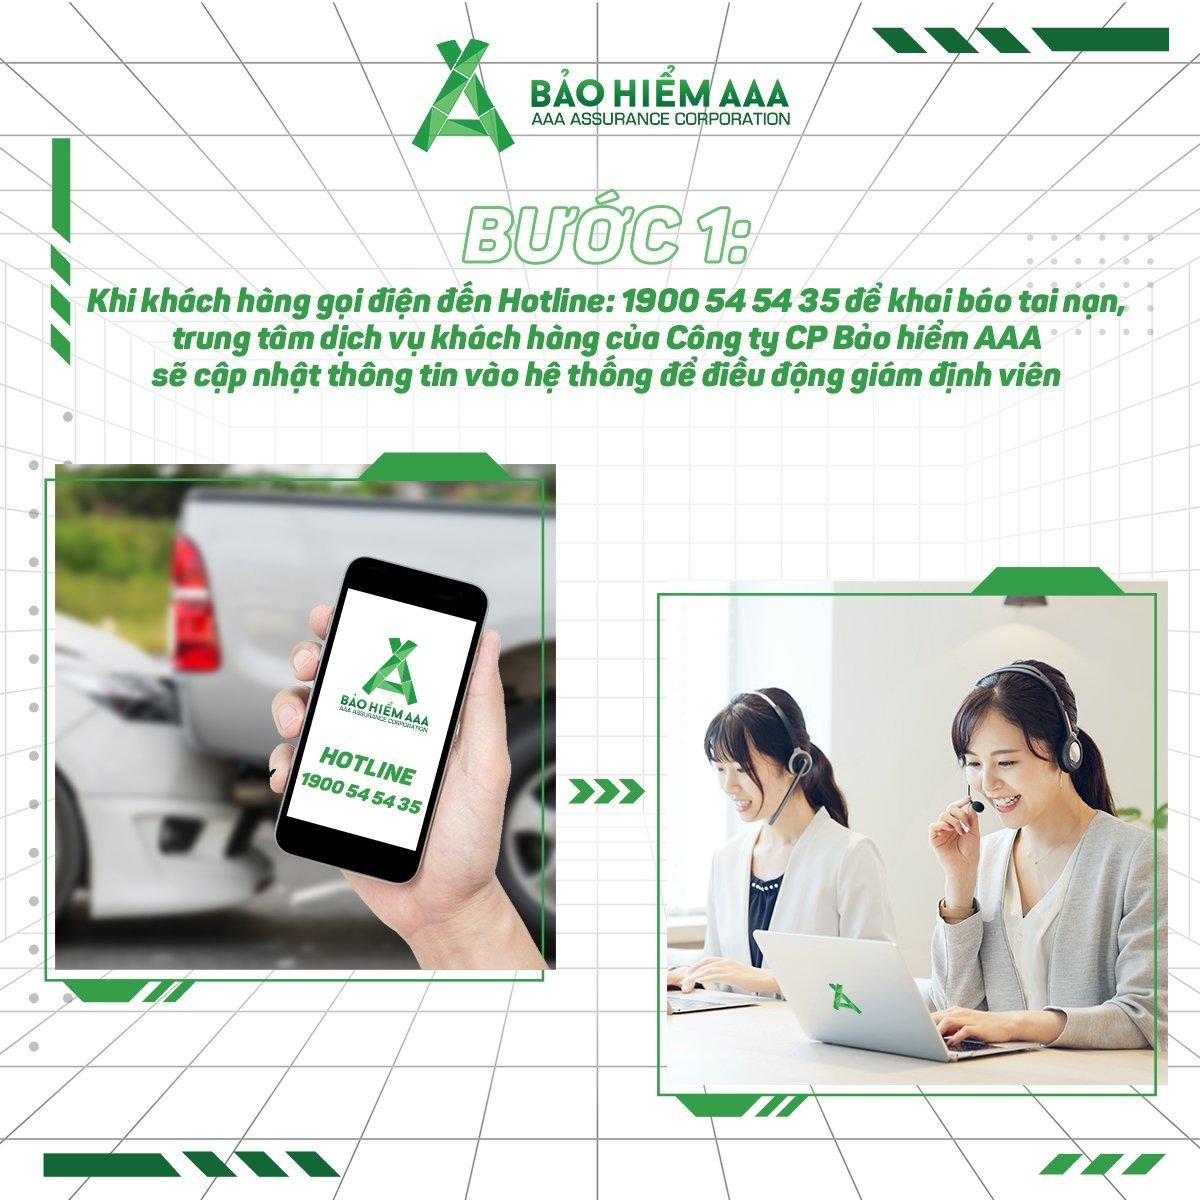 Bảo hiểm AAA kích hoạt tính năng khai báo tai nạn online, rút ngắn thời gian và quy trình giám định bồi thường đối với xe cơ giới - ảnh 2